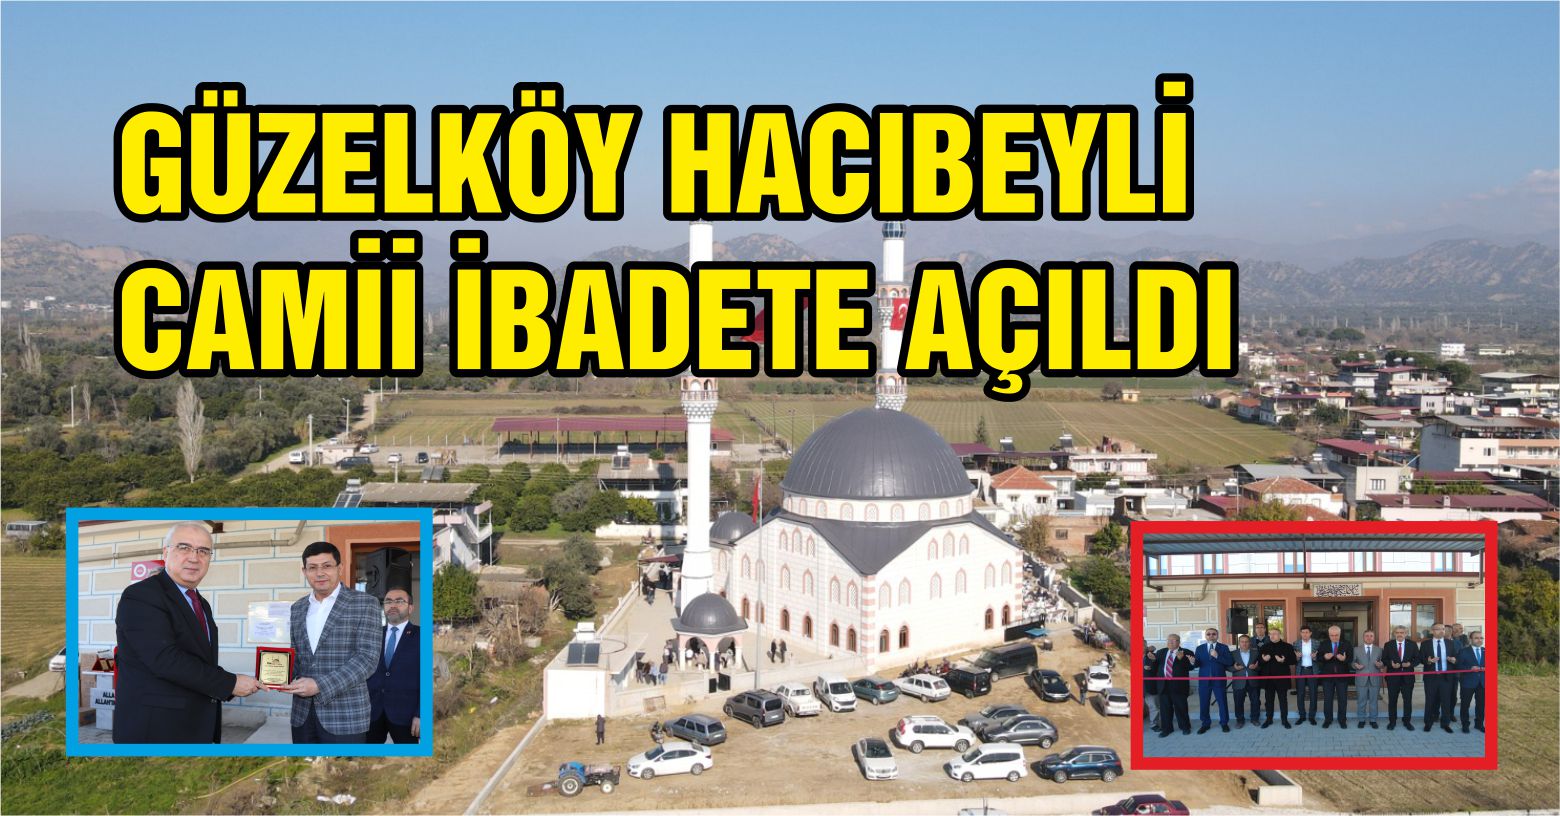 Güzelköy Hacıbeyli Camii İbadete Açıldı